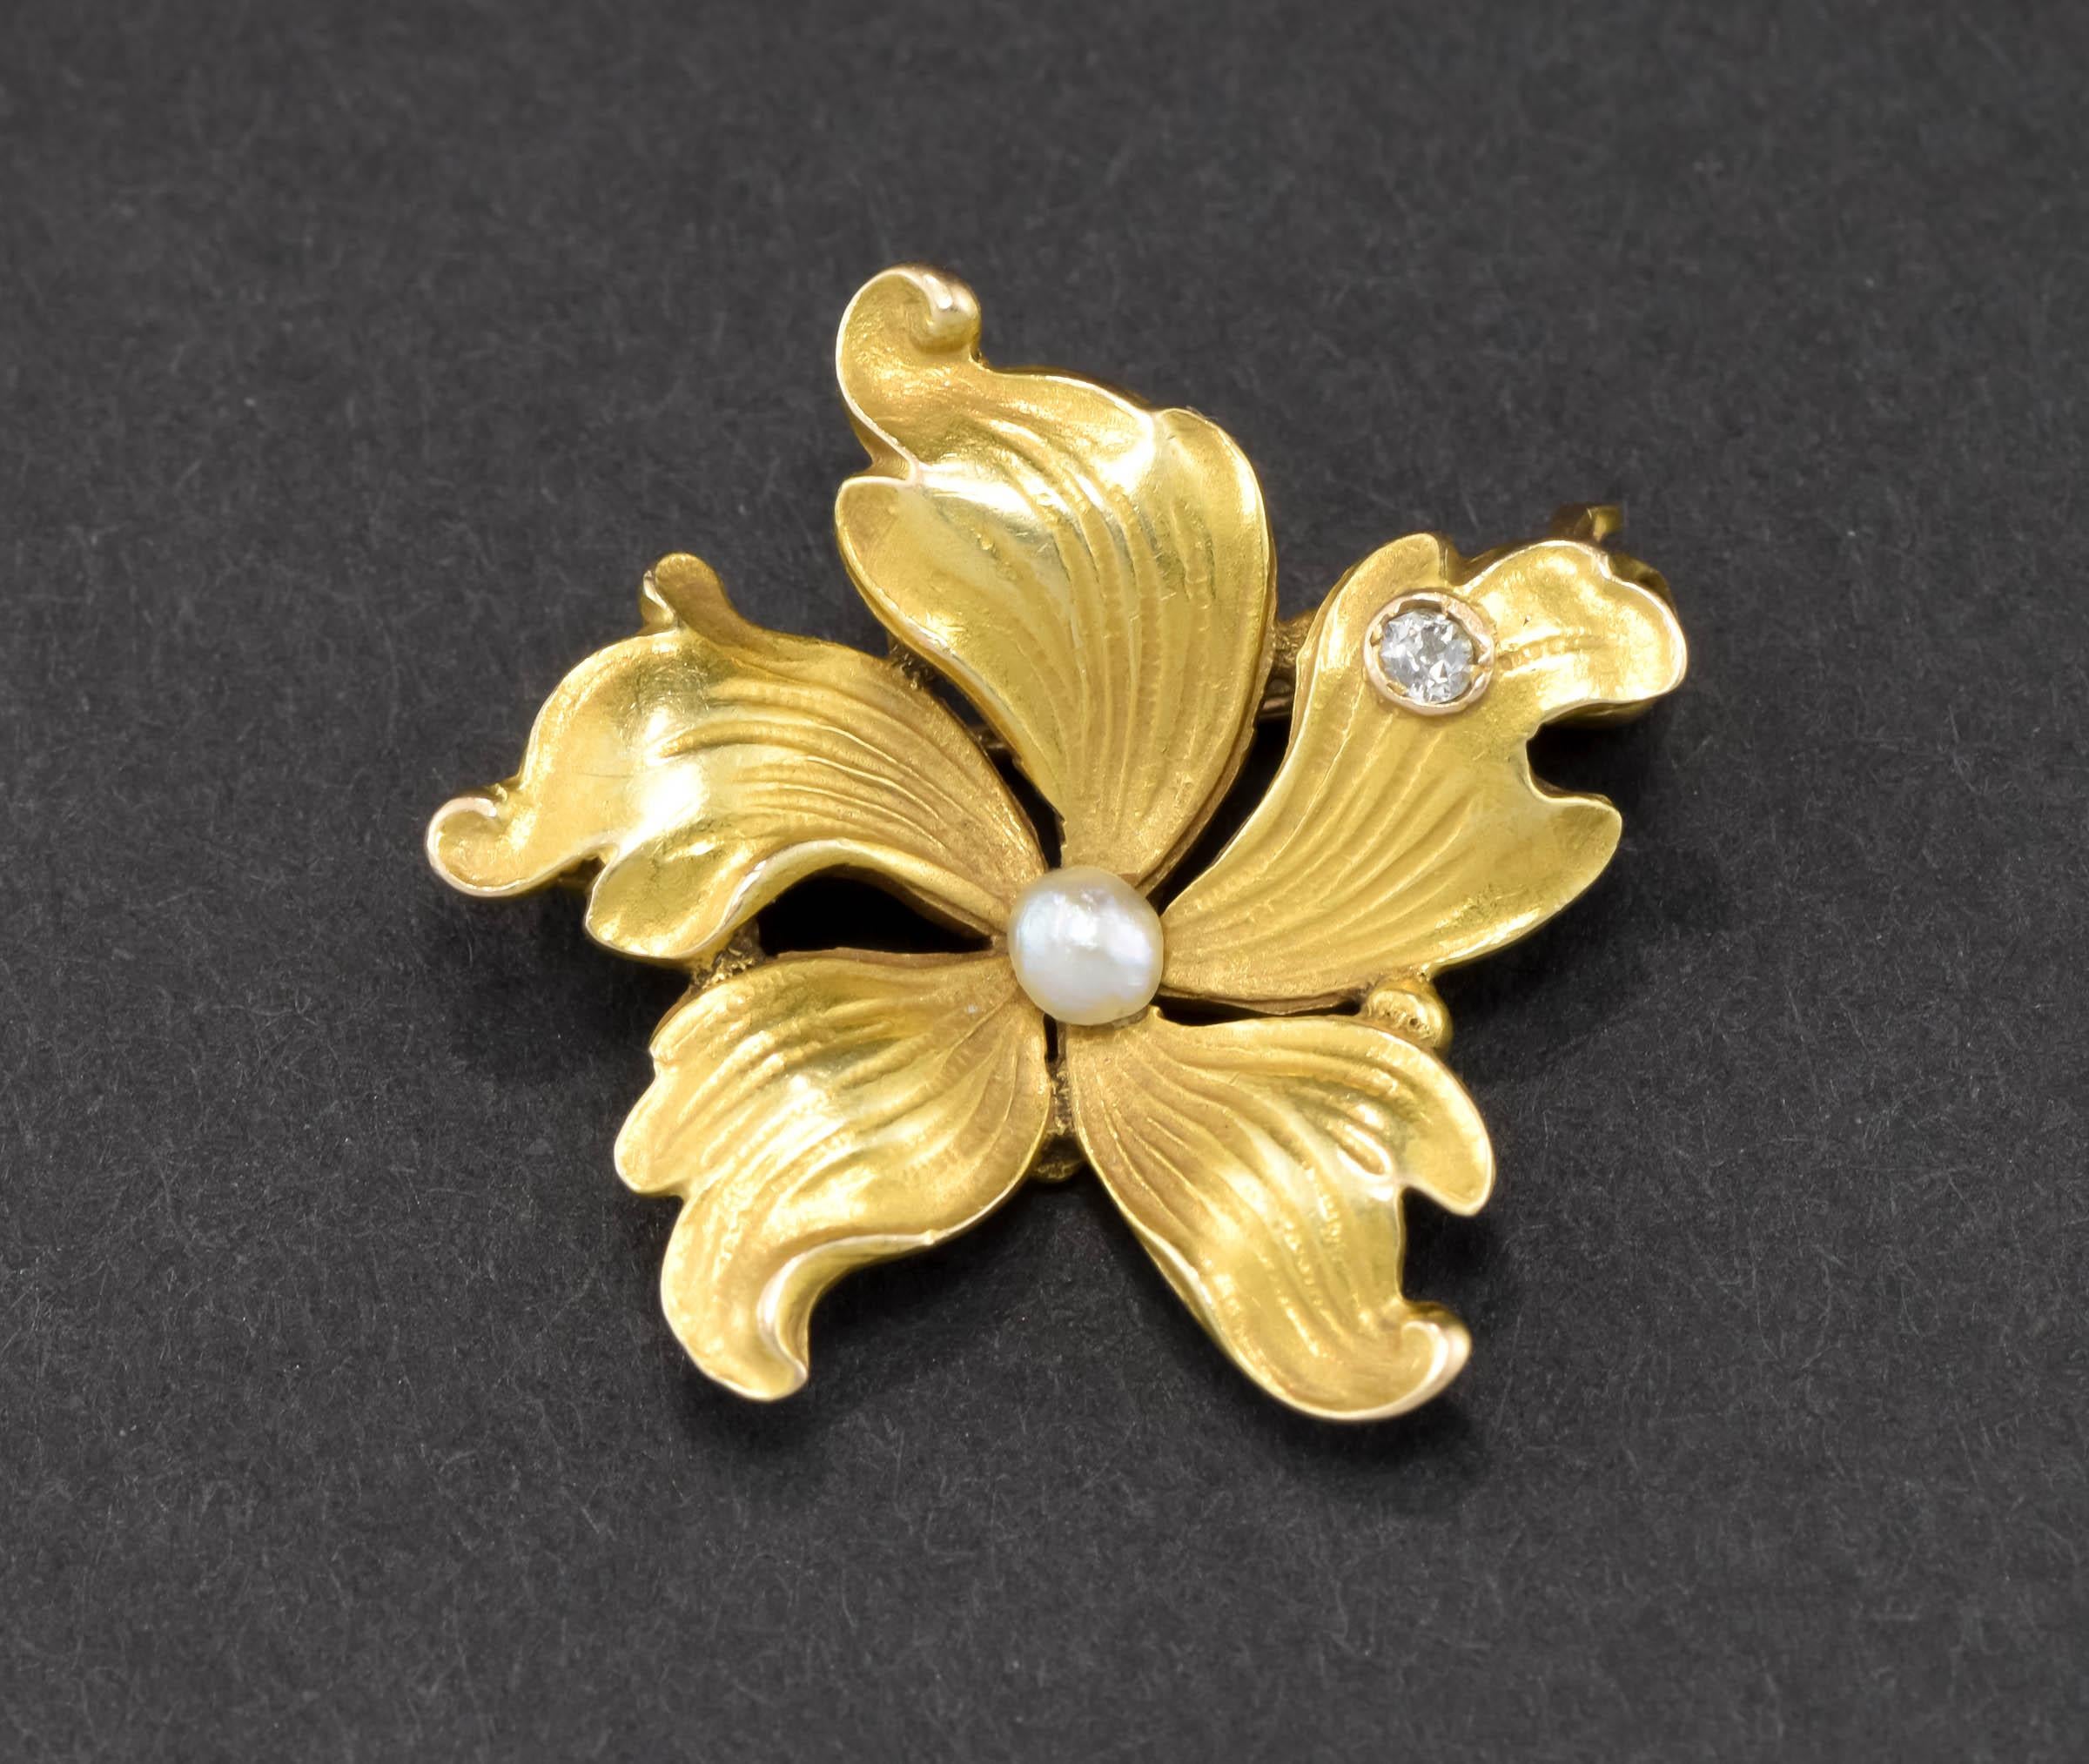 Nous vous proposons une magnifique broche fleur en or d'époque Art Nouveau, délicate et petite, en très bon état d'origine.

Finement réalisée en or jaune 14 carats, la pièce conserve la majeure partie de sa finition fleurie d'origine, avec la